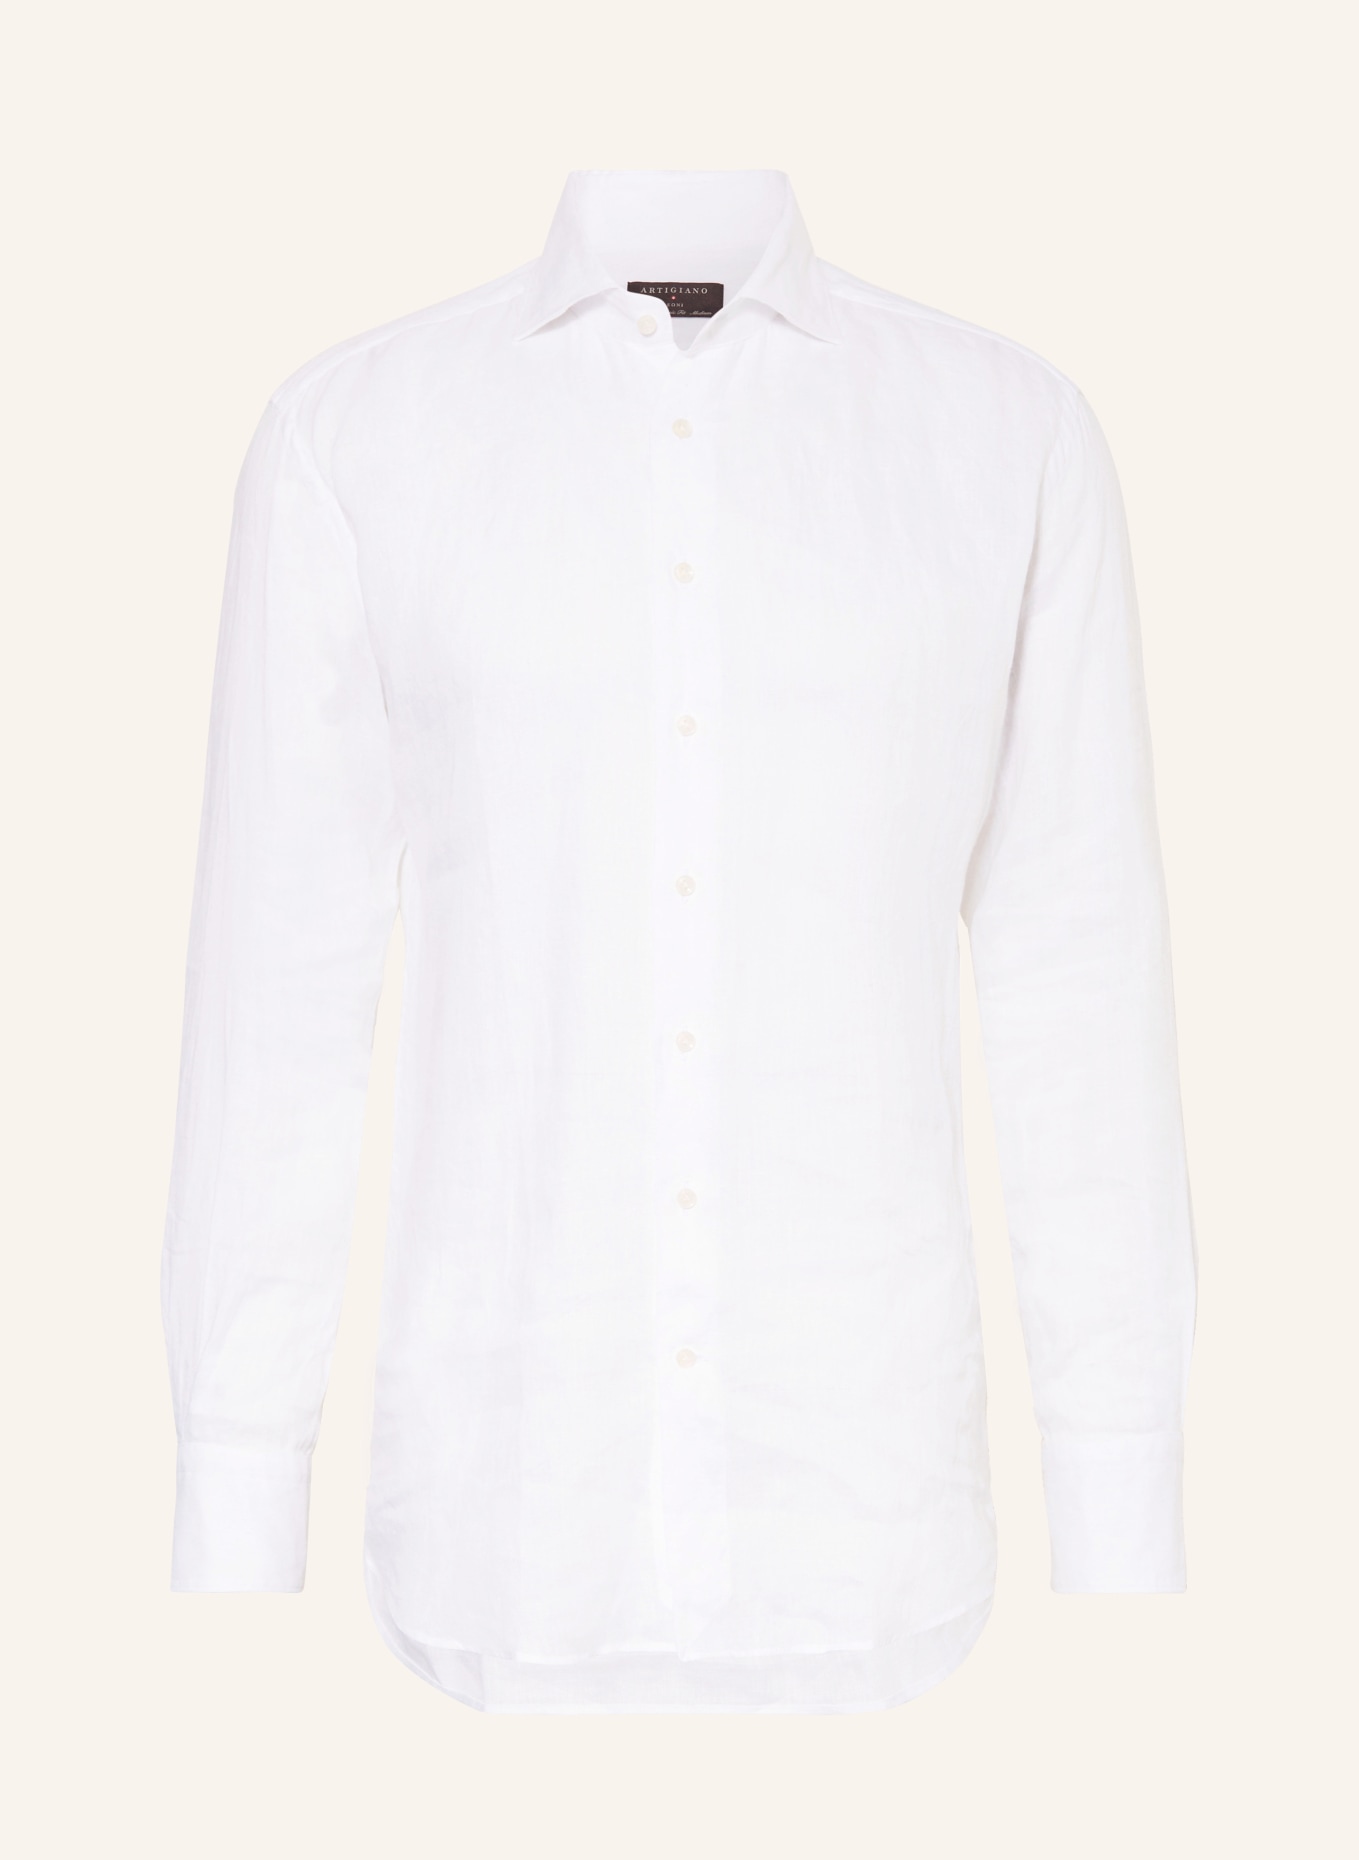 ARTIGIANO Leinenhemd Classic Fit, Farbe: 1 uni white (Bild 1)